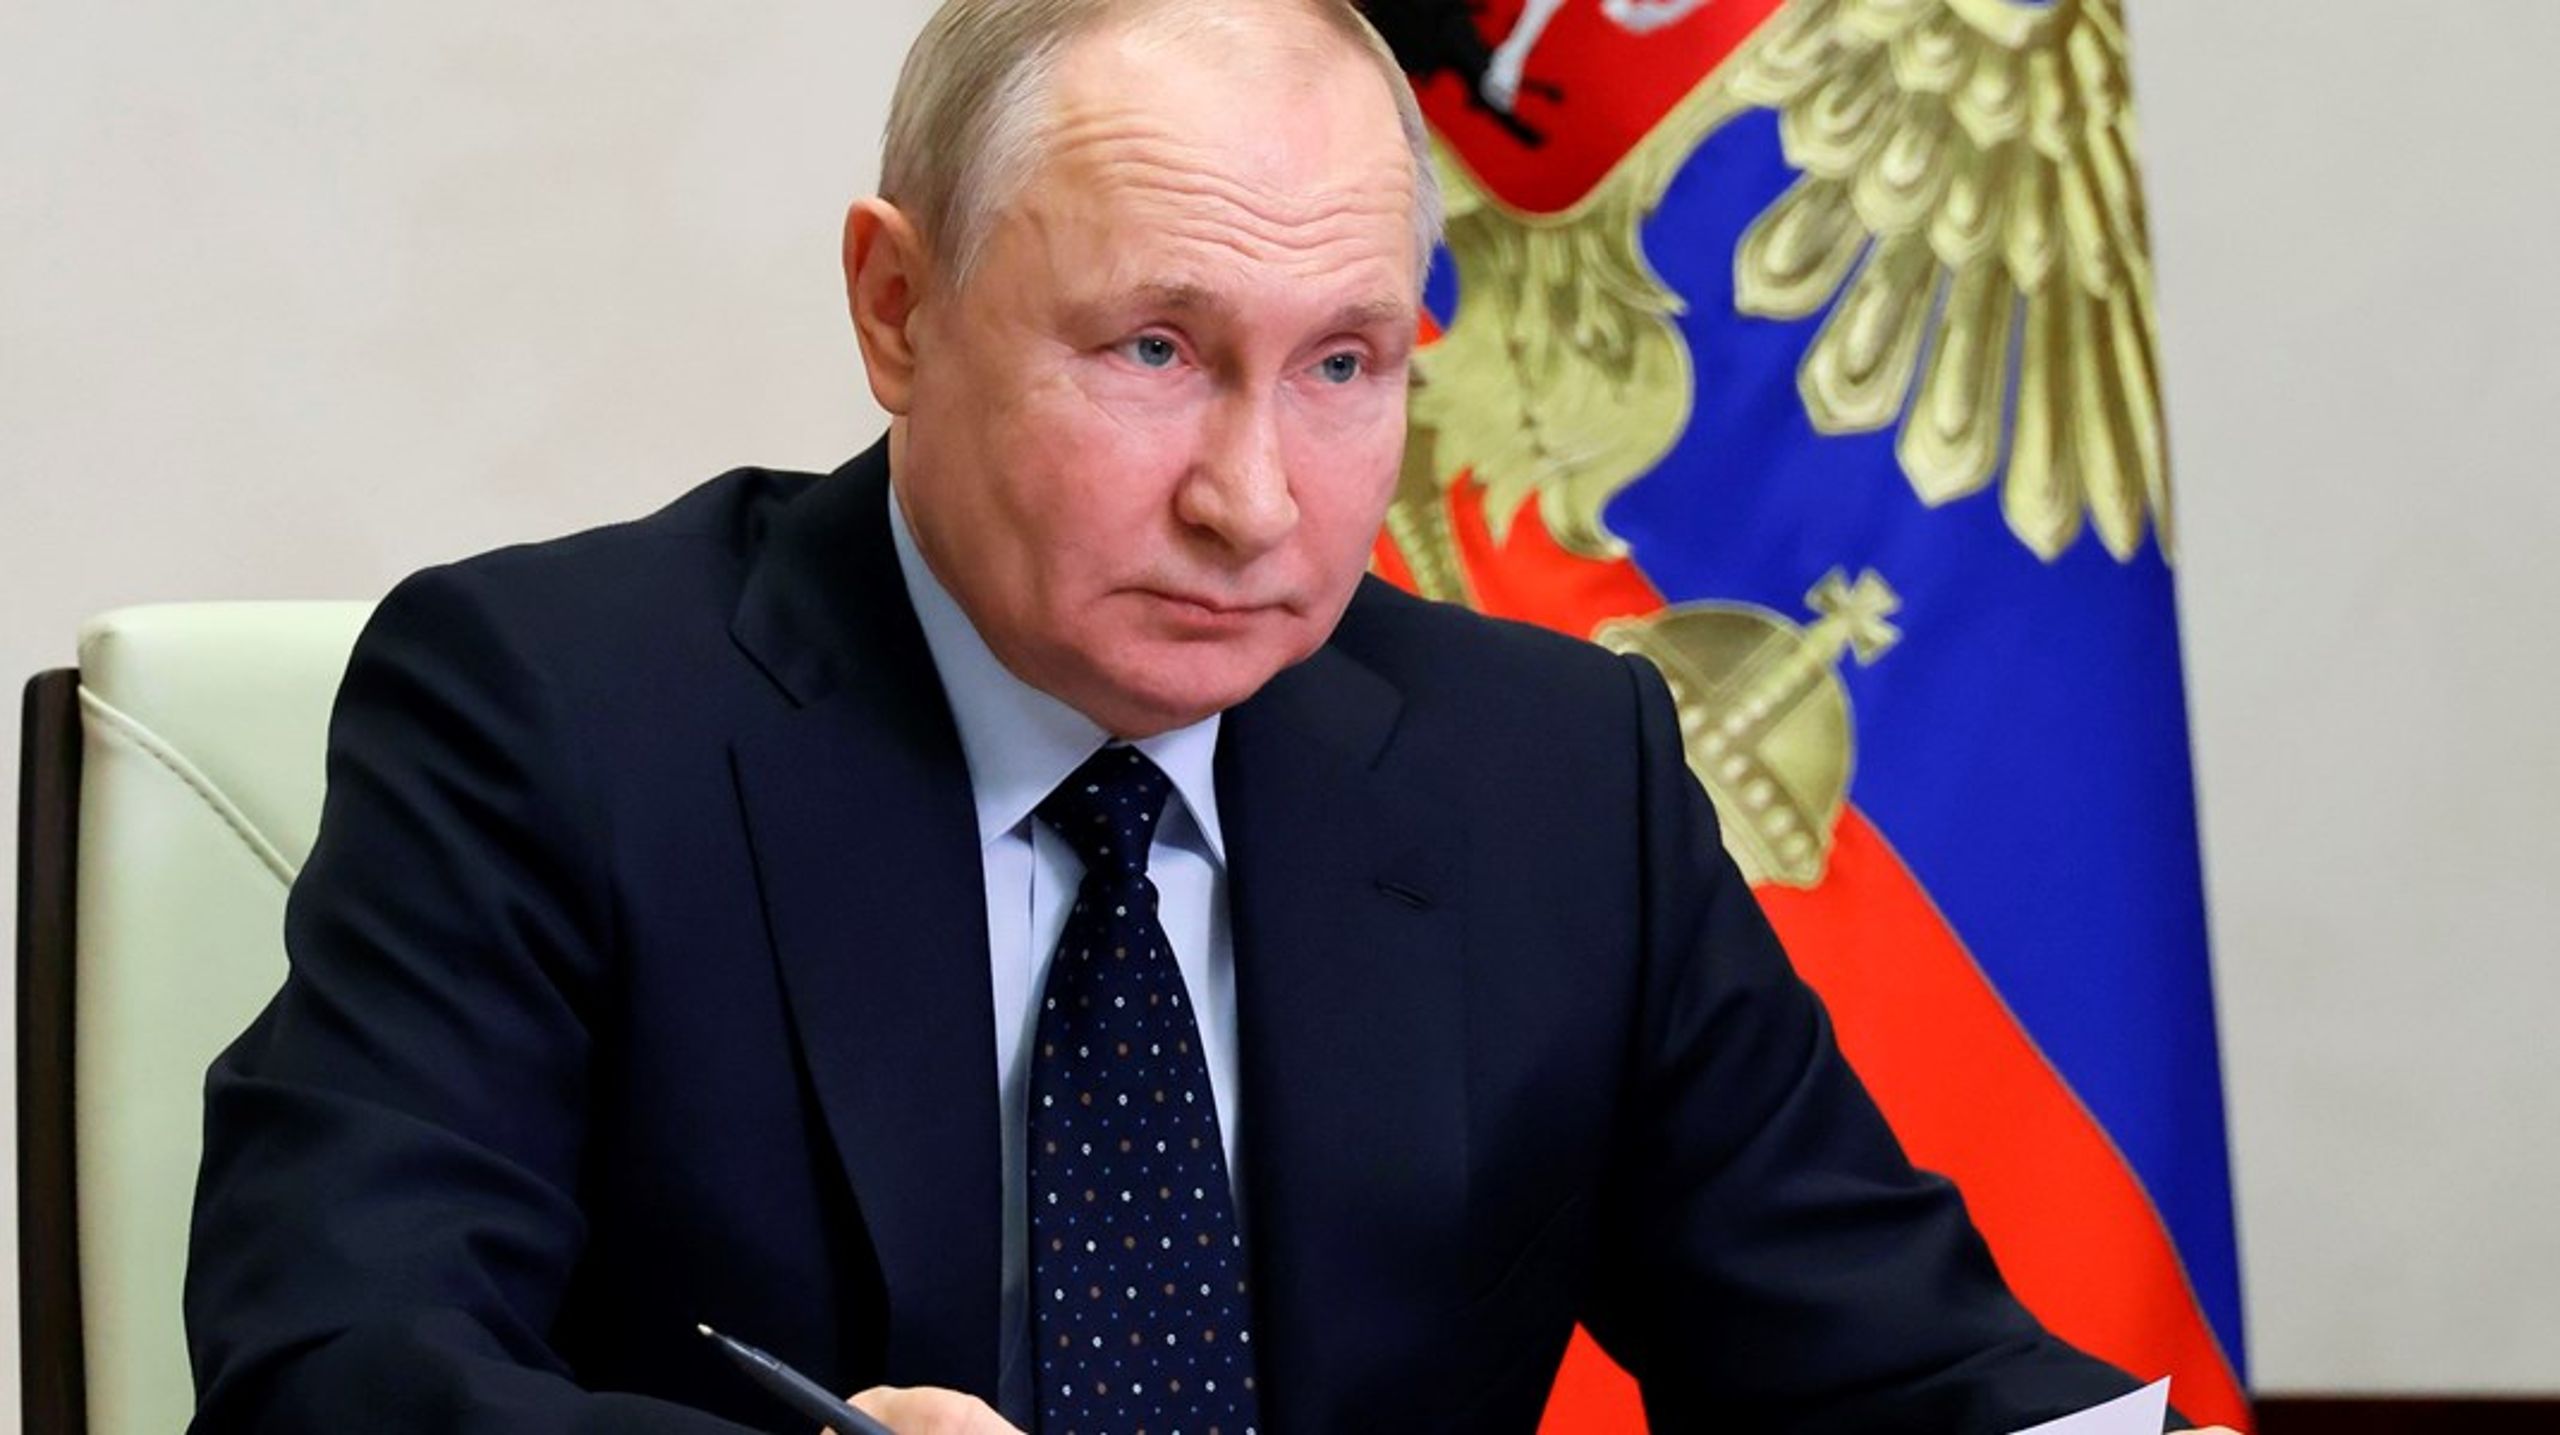 Ryssland och det ryska ledarskapet måste helt enkelt straffas hårdare för sina brott mot mänskligheten, skriver debattörerna.